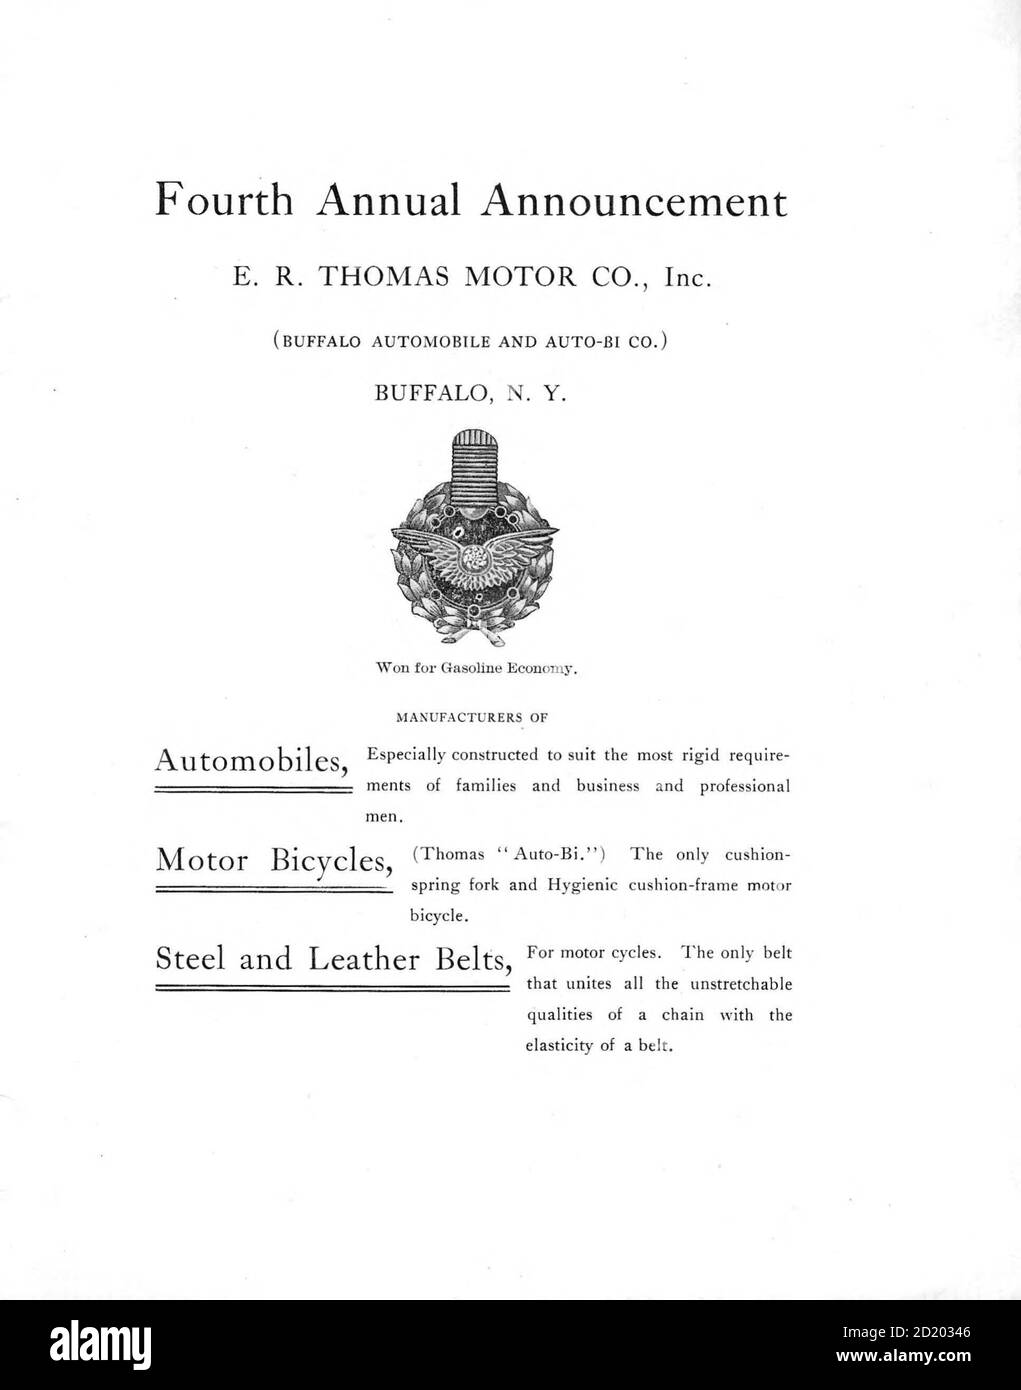 Der E. R. Thomas Motor Co. Inc. Advance Catalog - Hersteller von Automobilen und Auto-Bi Motorrädern - aus Buffalo New York, USA, gedruckt 1903. E. R. Thomas Motor Company war ein Hersteller von motorisierten Fahrrädern, motorisierten Dreirädern, Motorrädern und Automobilen in Buffalo, New York zwischen 1900 und 1919 Stockfoto